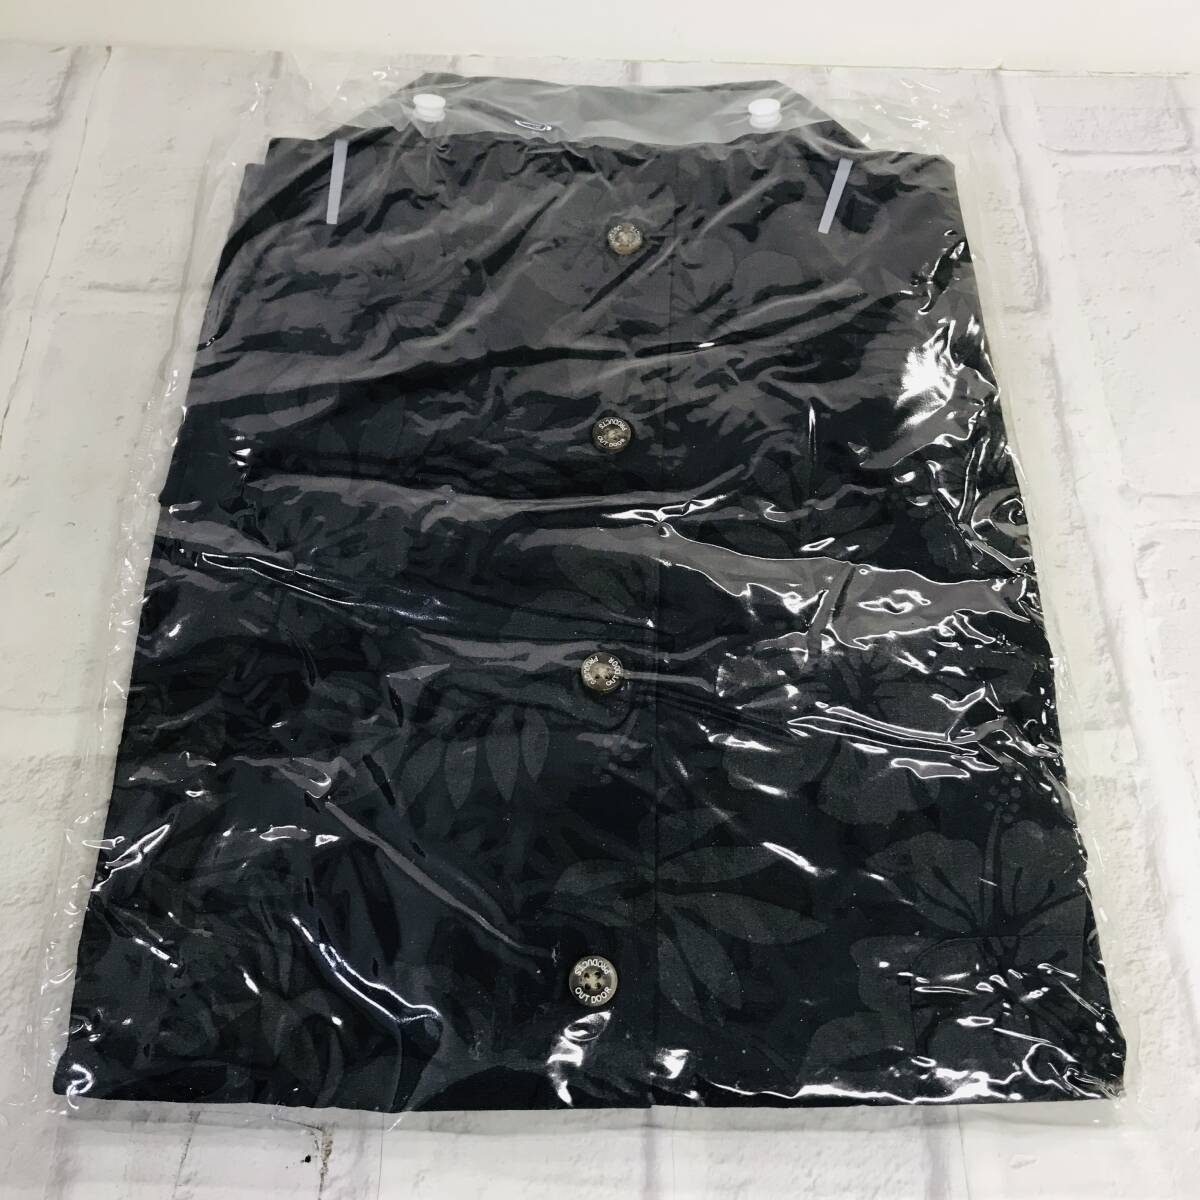 ☆【服】OUTDOOR アロハ柄 半袖 オープンシャツ 6L ブラック タグ付き☆N03-248Sの画像2